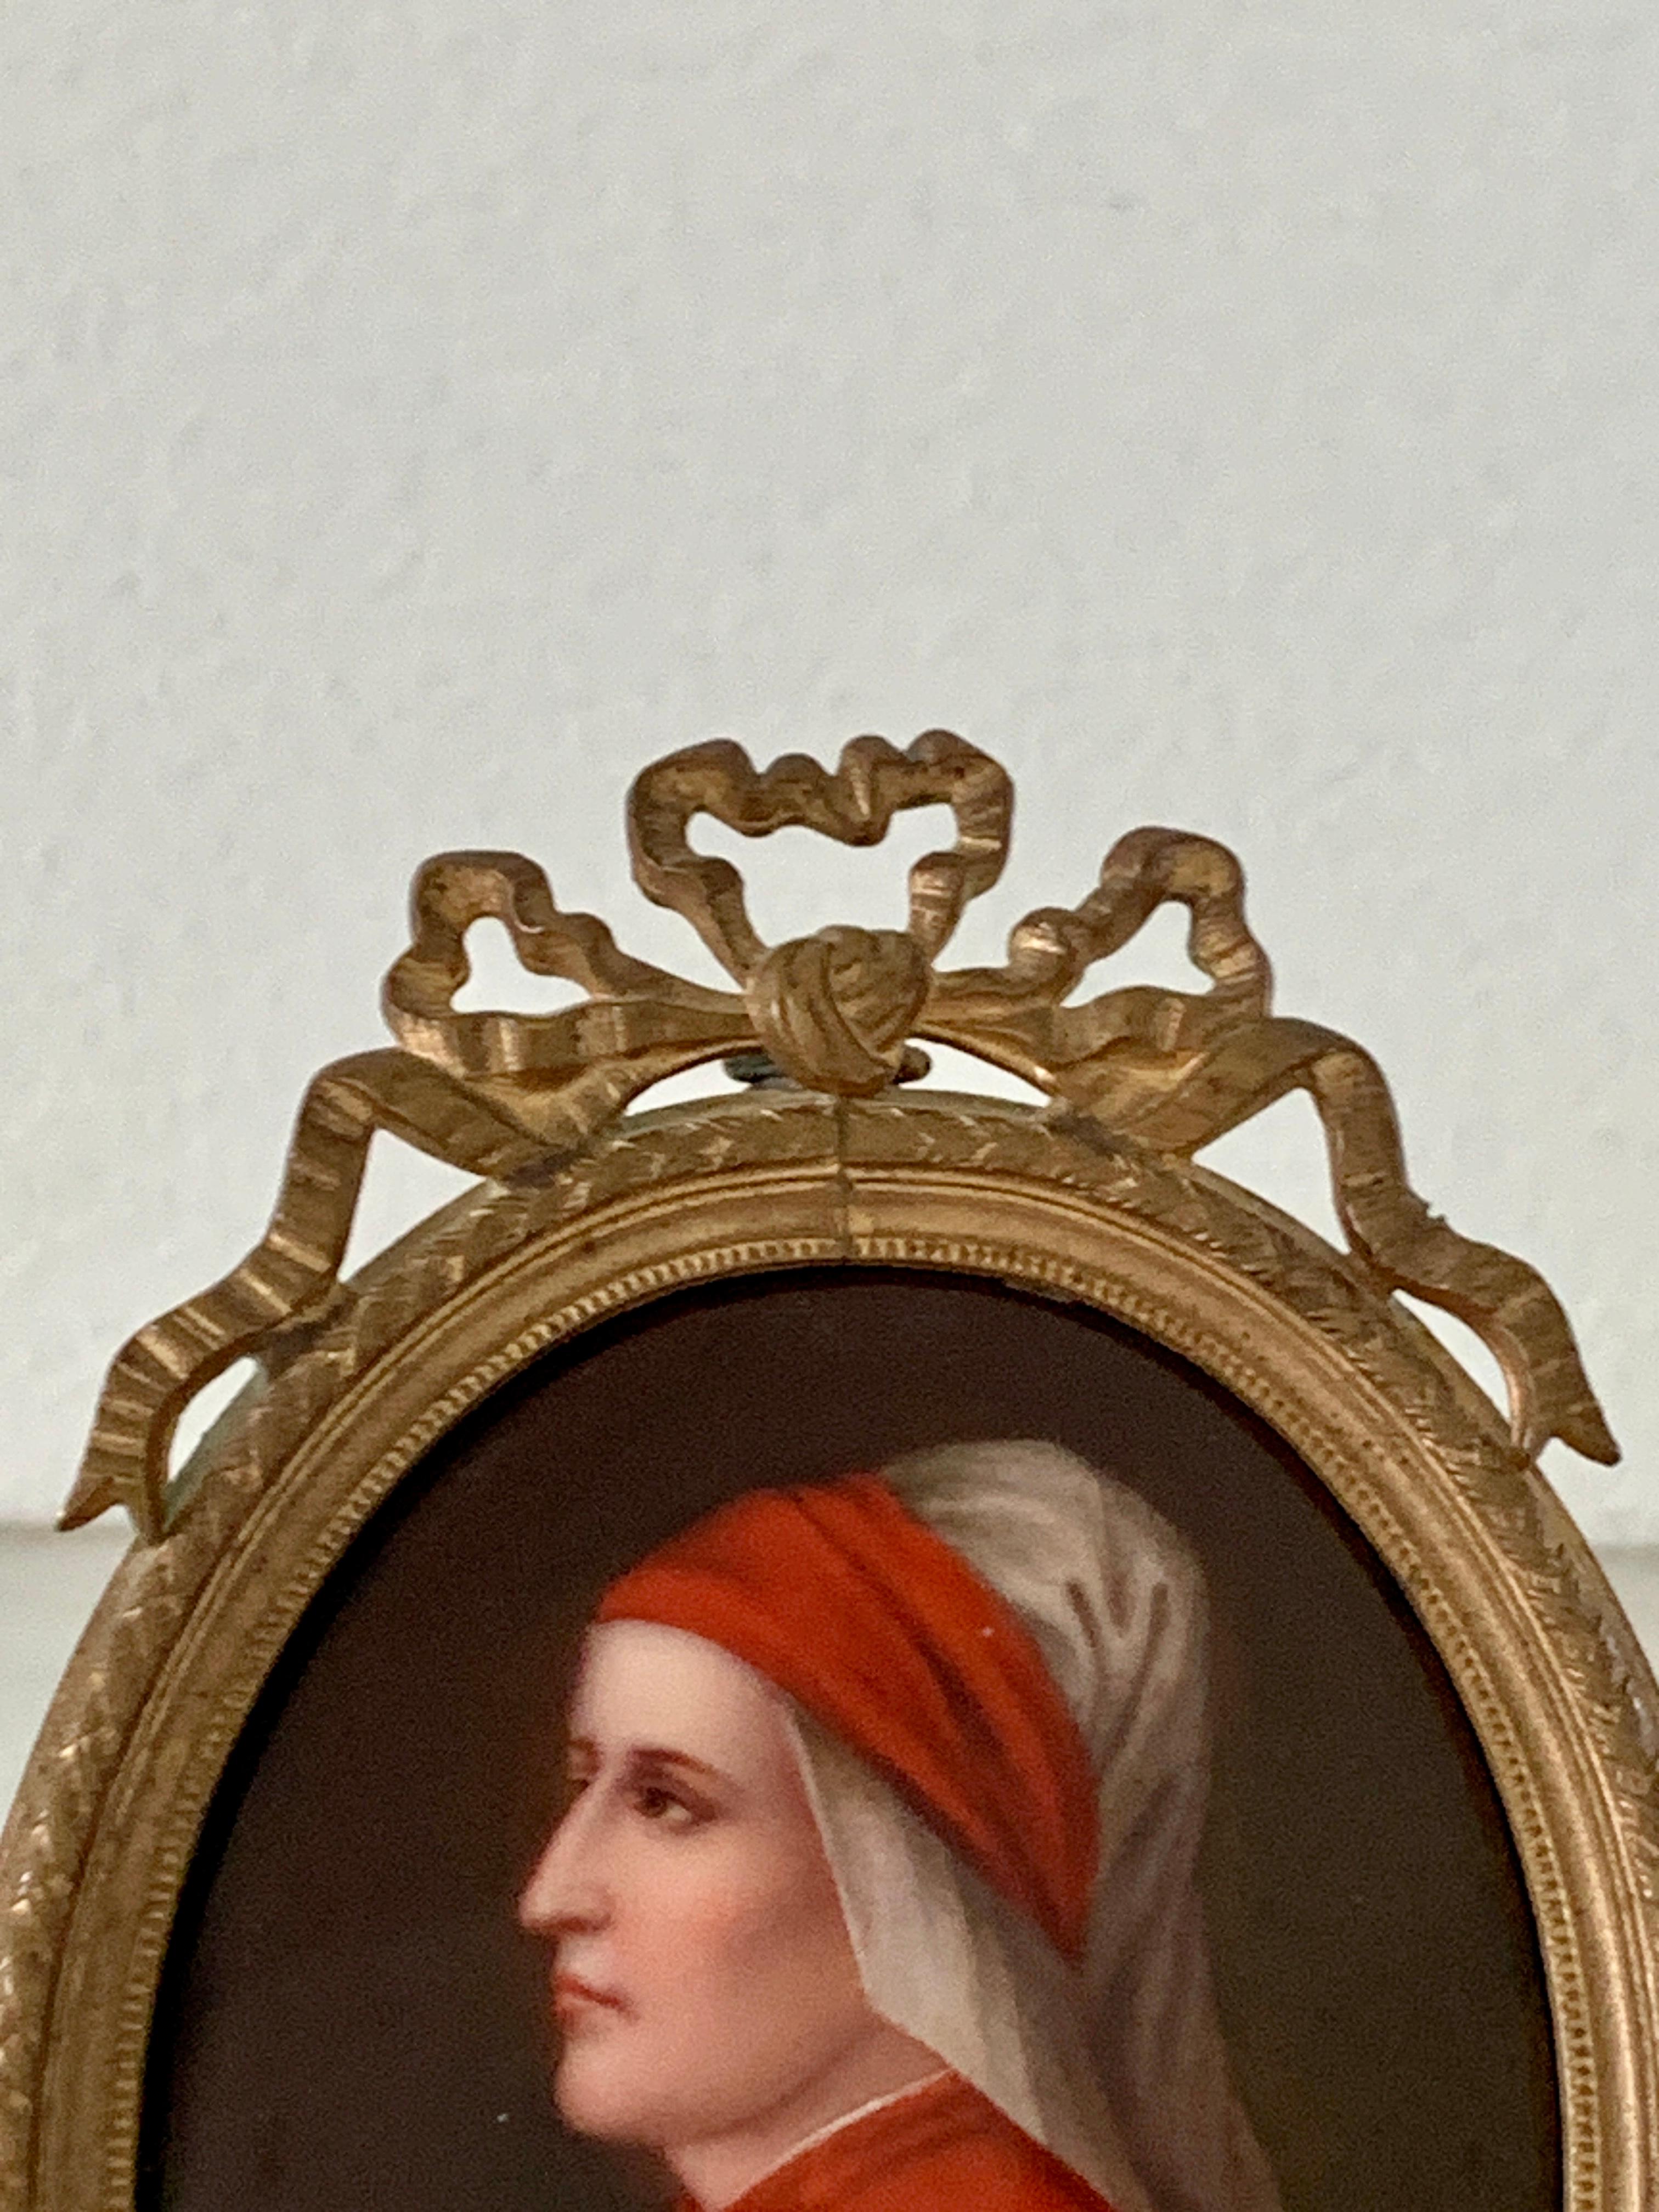 Superbe portrait miniature du poète italien Dante Alighieria, datant de la Renaissance italienne ou du Grand Tour. 

Italie, Fin du 19e siècle

Huile sur porcelaine, présentée dans un cadre en laiton

Mesures : 3,13 